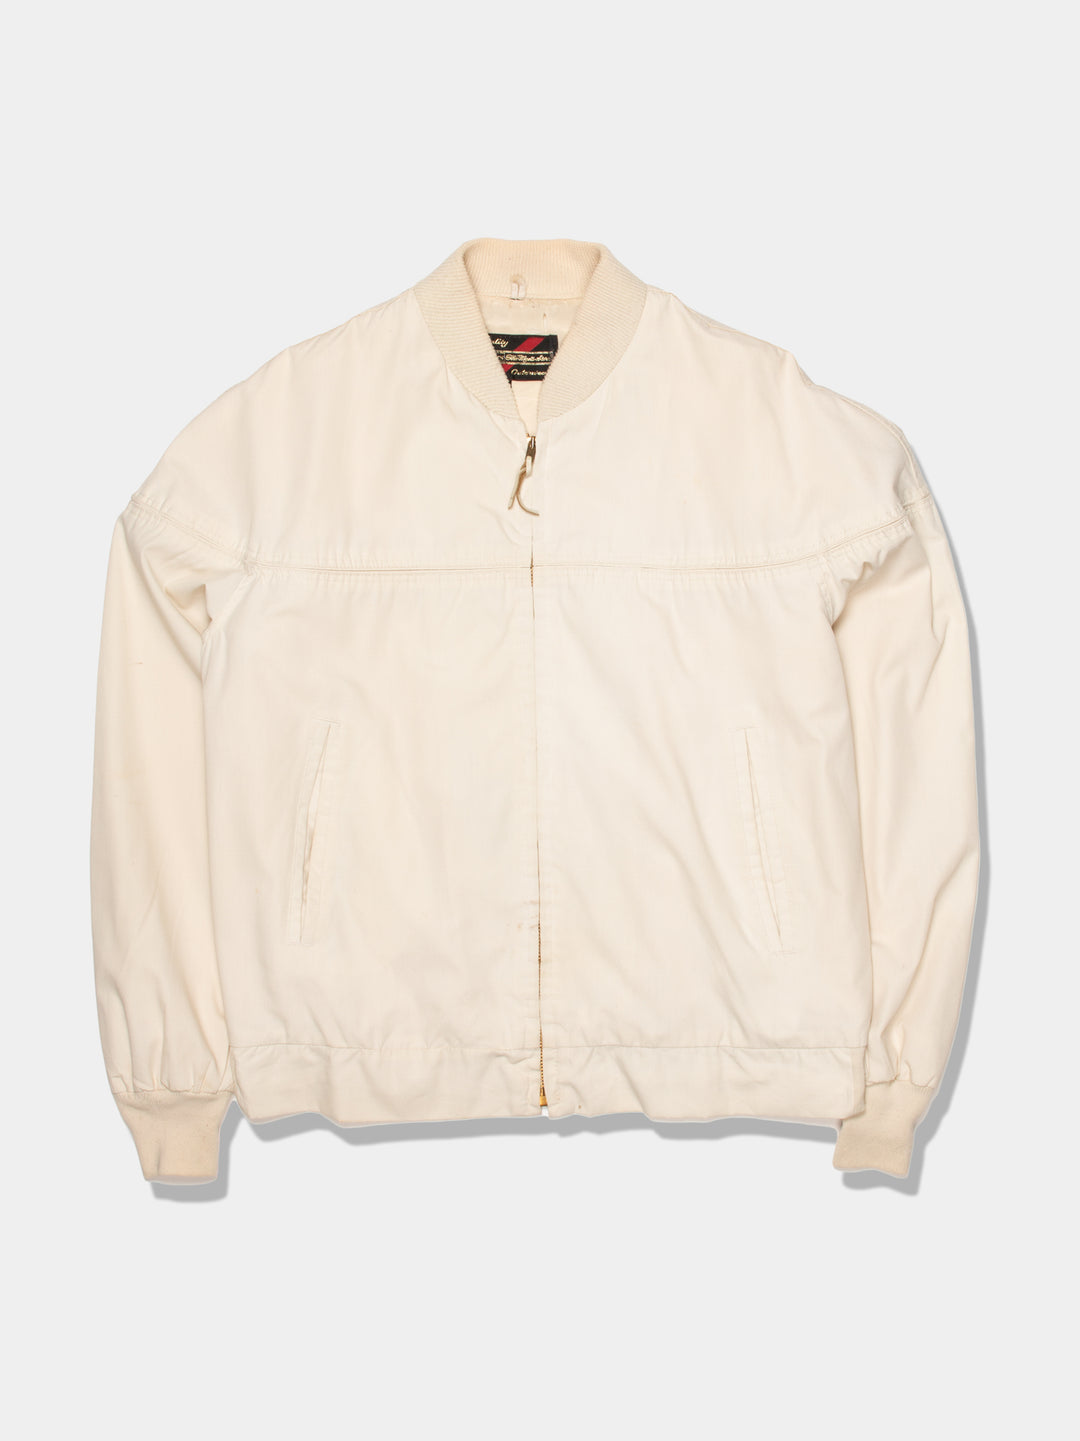 80s Sears Cream Harrington Jacket (M)